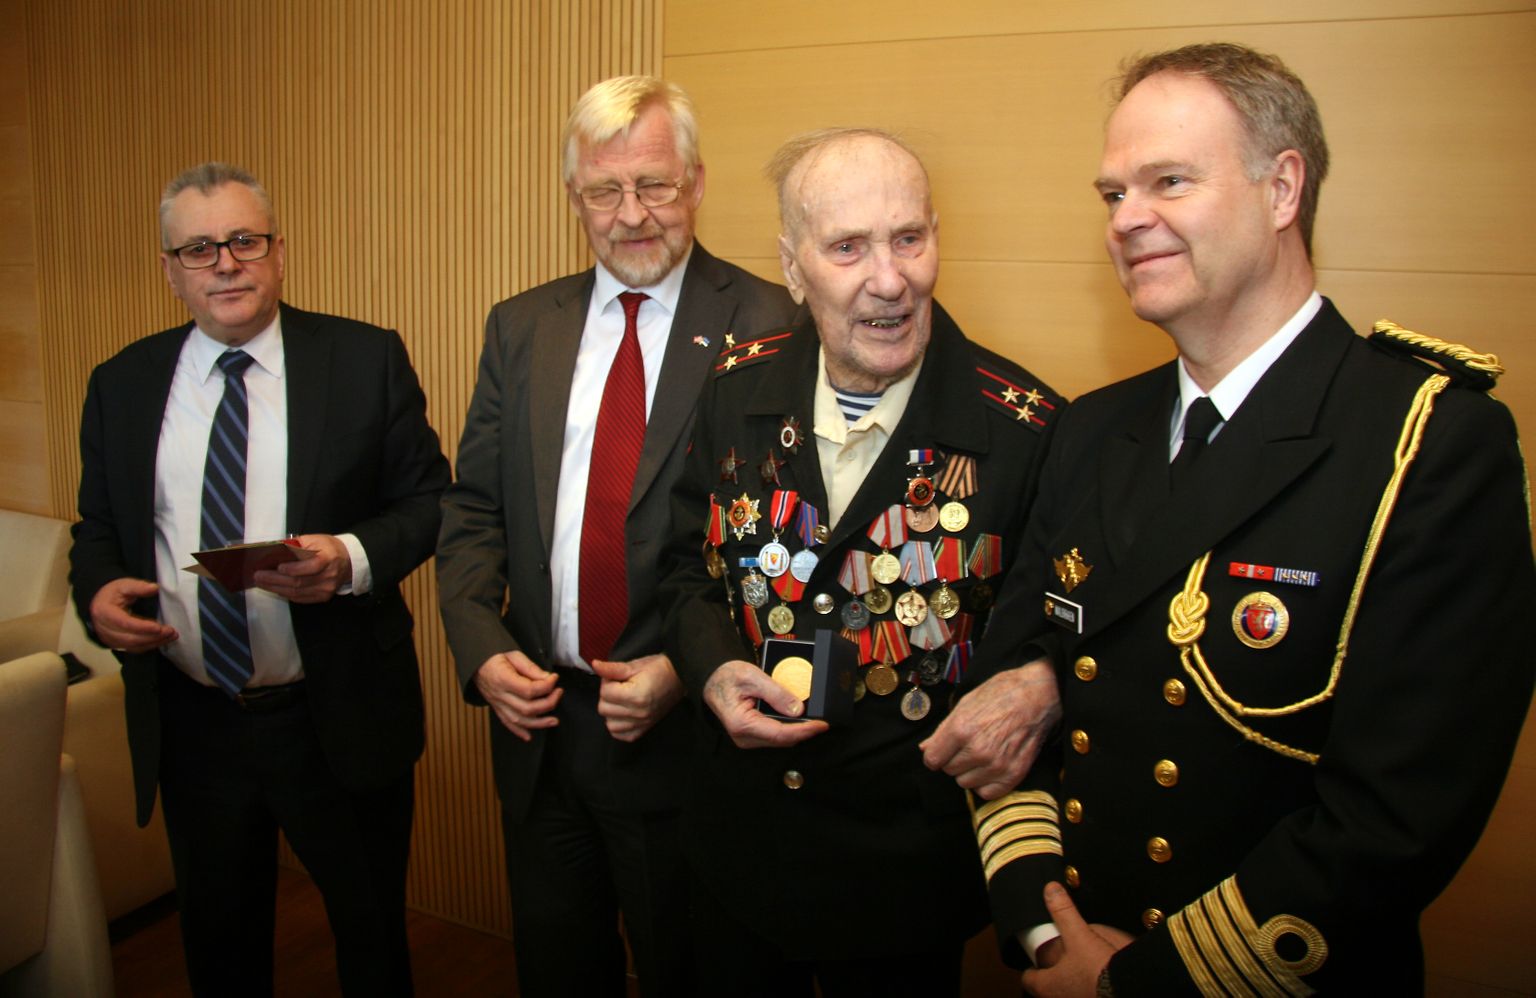 105aastaseks saanud Aleksandr Razguljajevi suur medalite kogu täienes sel veel mitme uue mälestusmedaliga, mille andsid talle pidulikult üle Juri Gribkov ja Ole Øveraas.